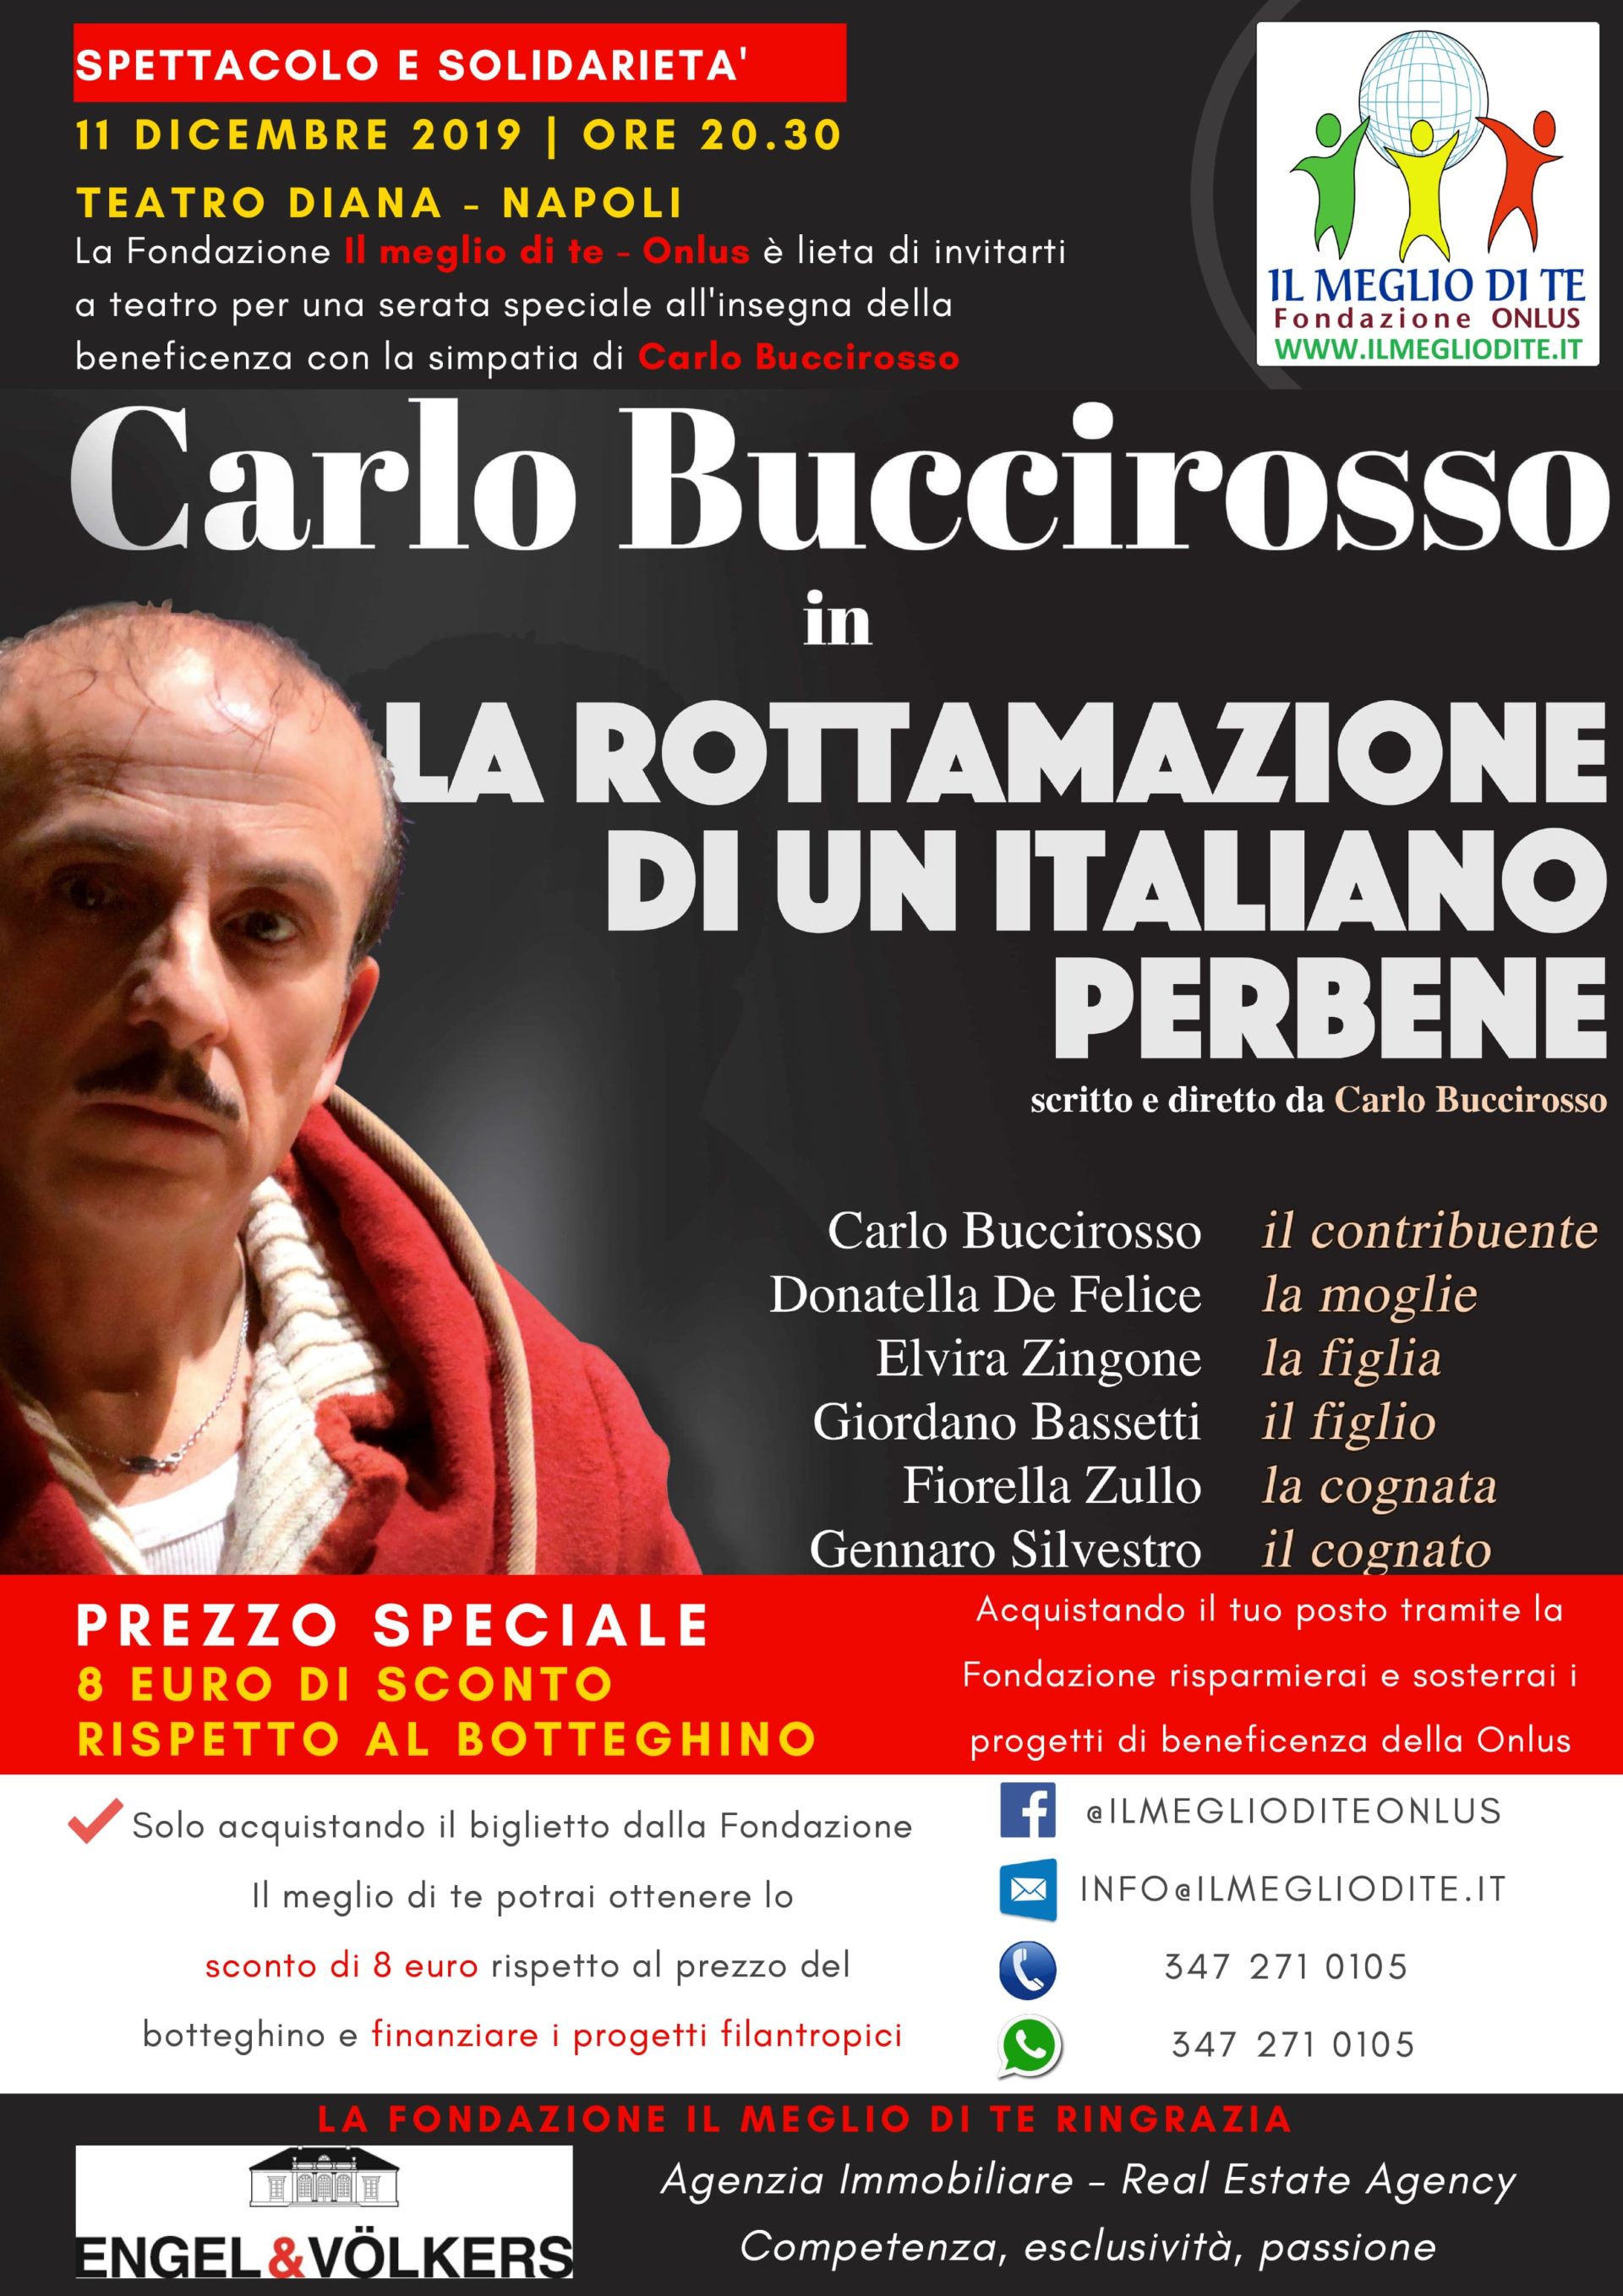 Carlo Buccirosso al Teatro Diana per la Fondazione Il meglio di te - Onlus